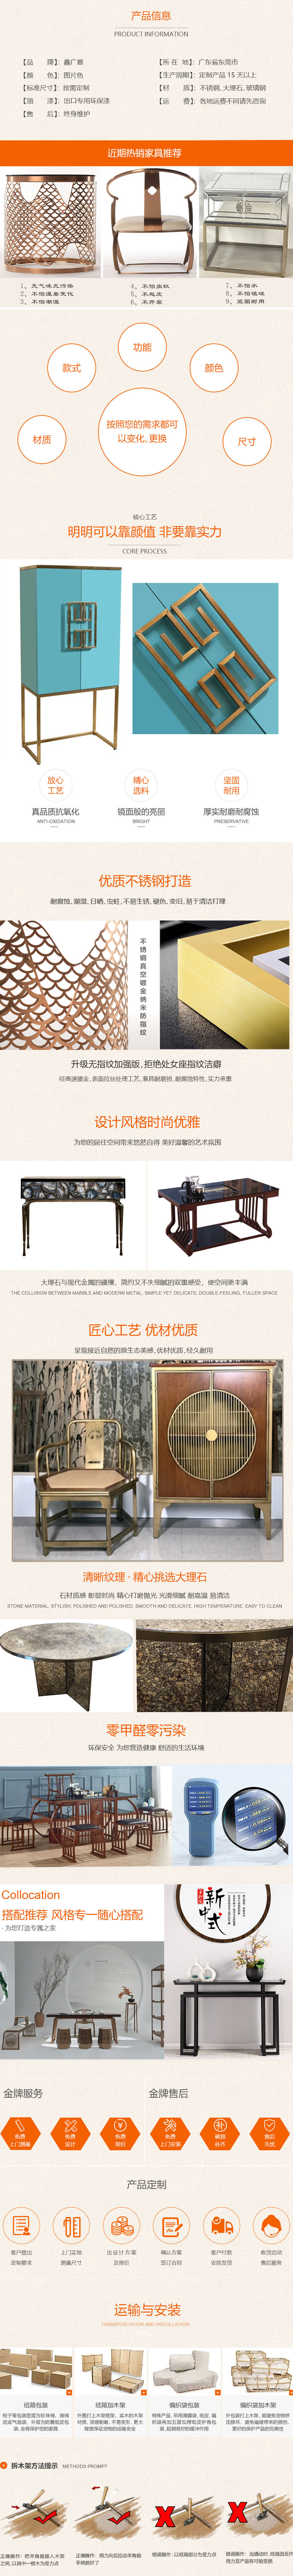 广东古典家具